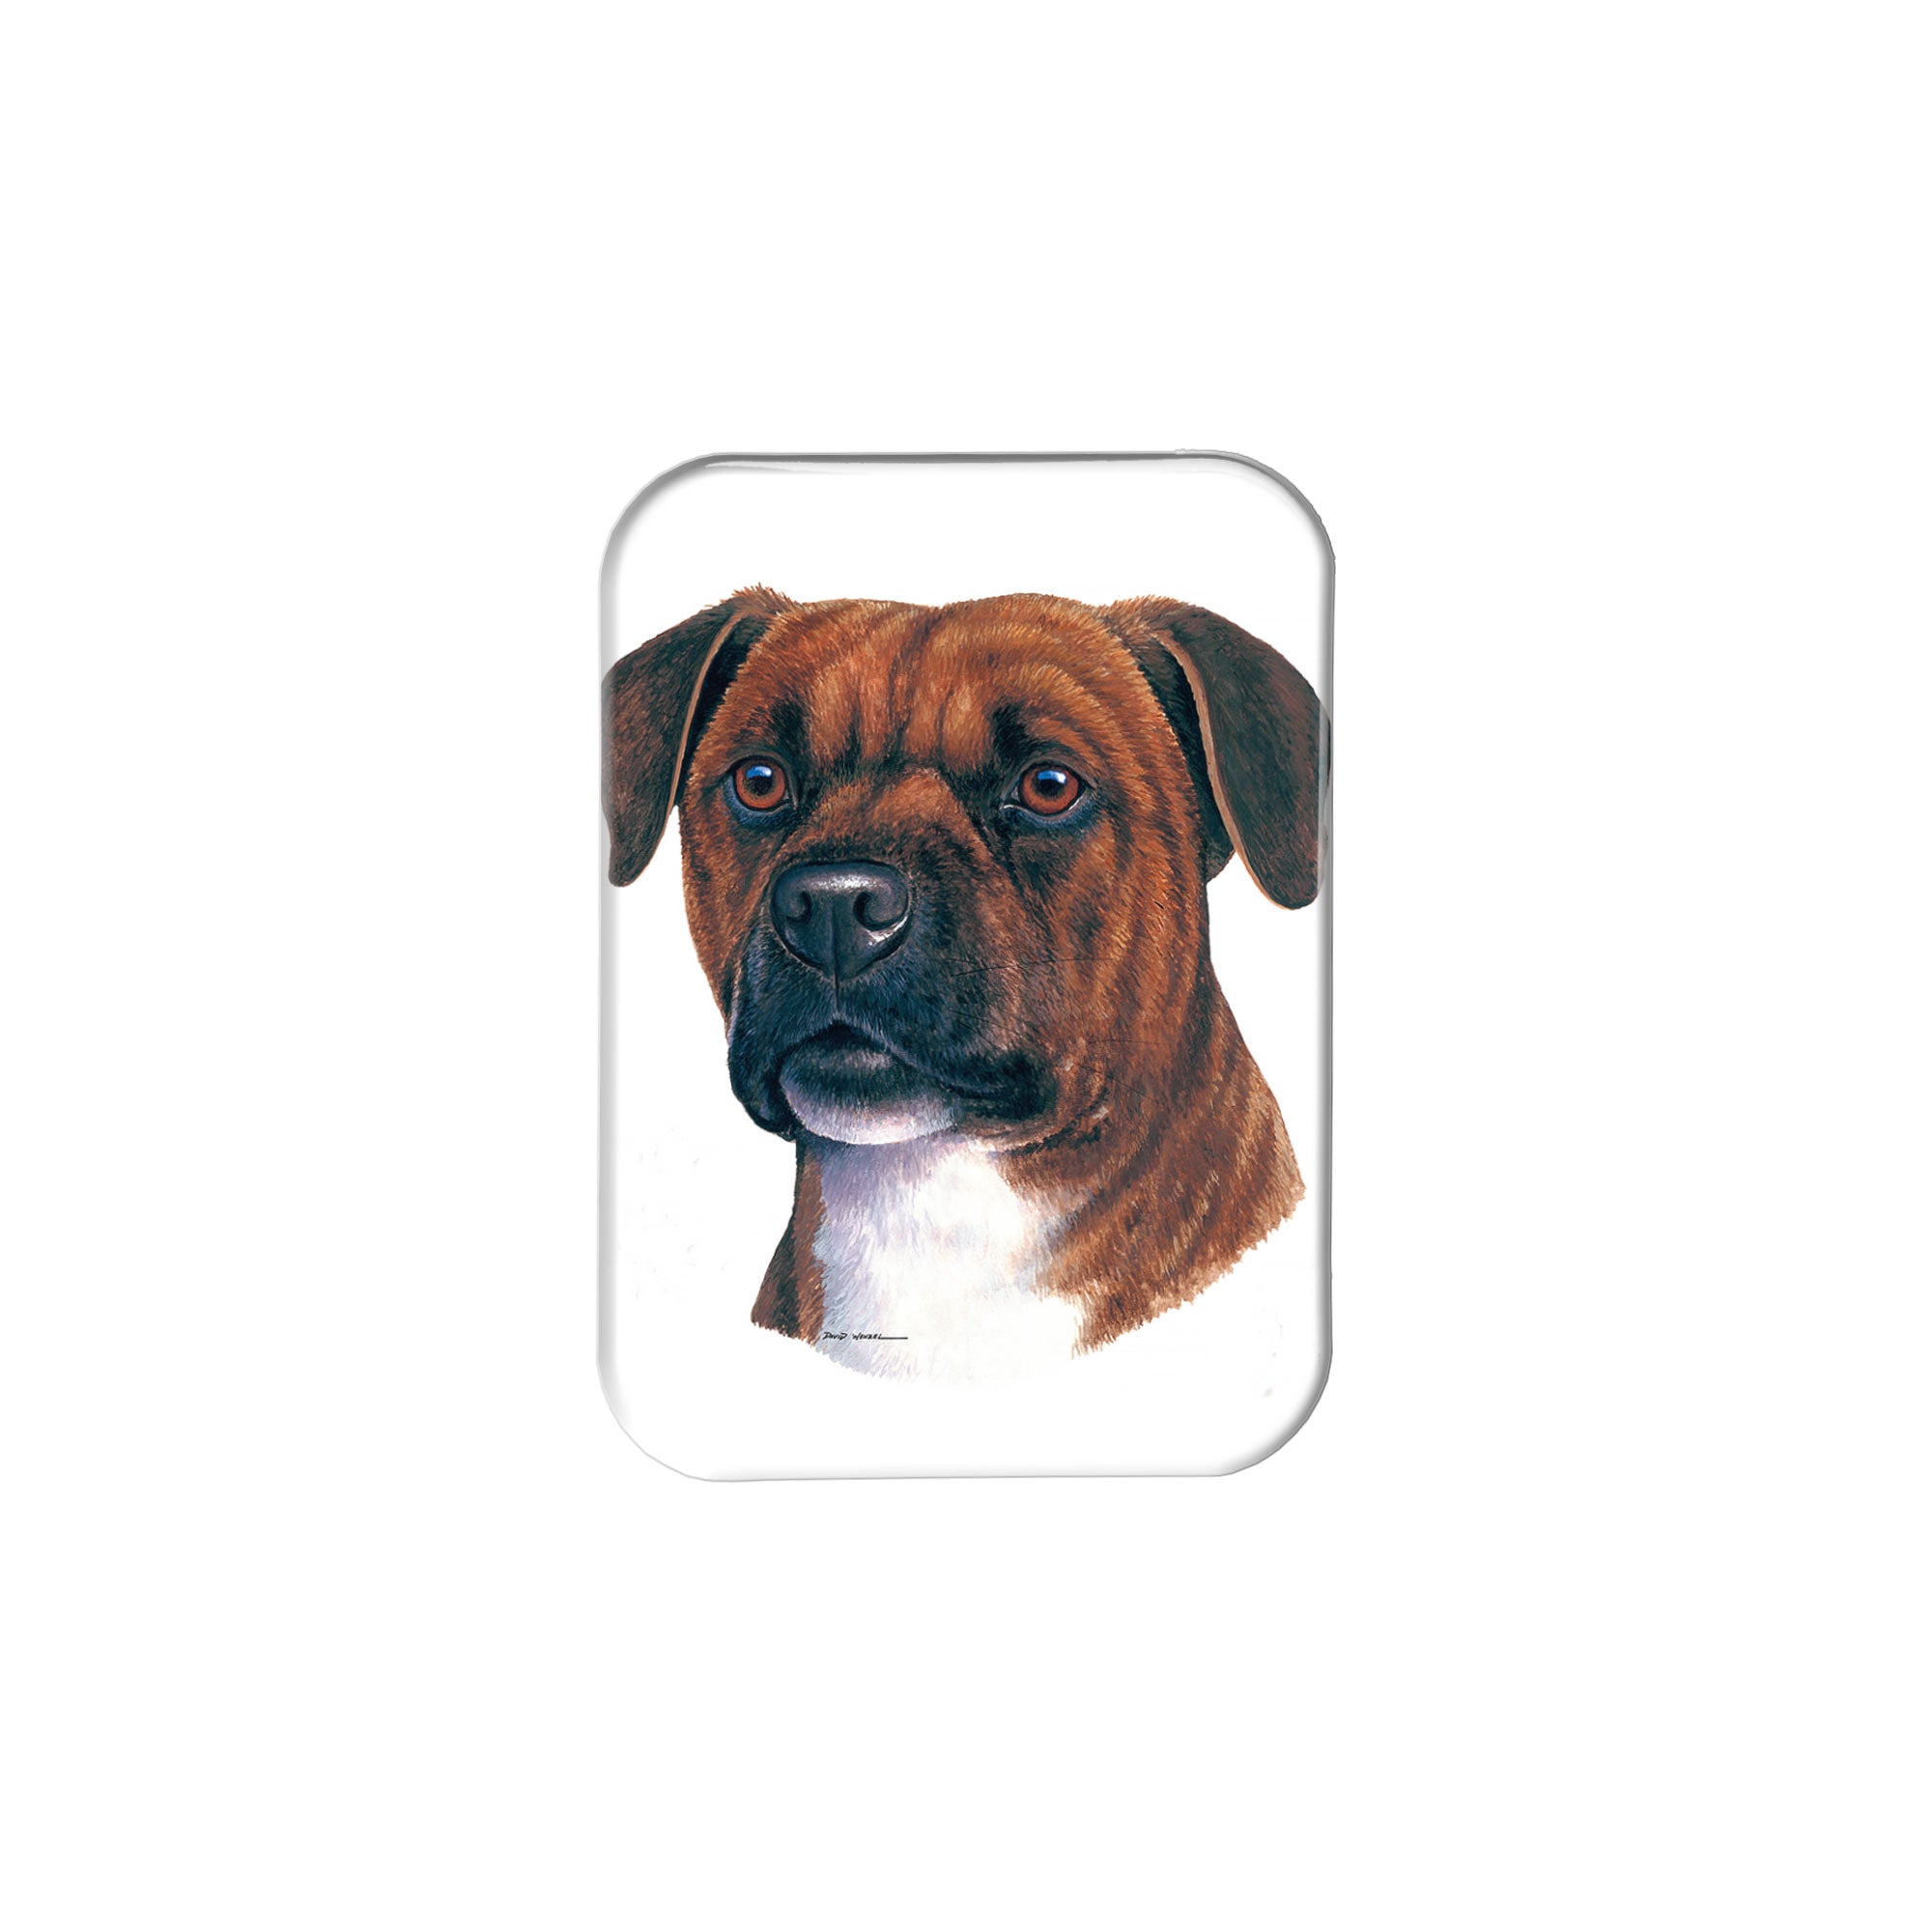 "Staffordshire Bull Terrier" - 2.5" X 3.5" Rectangle Fridge Magnets